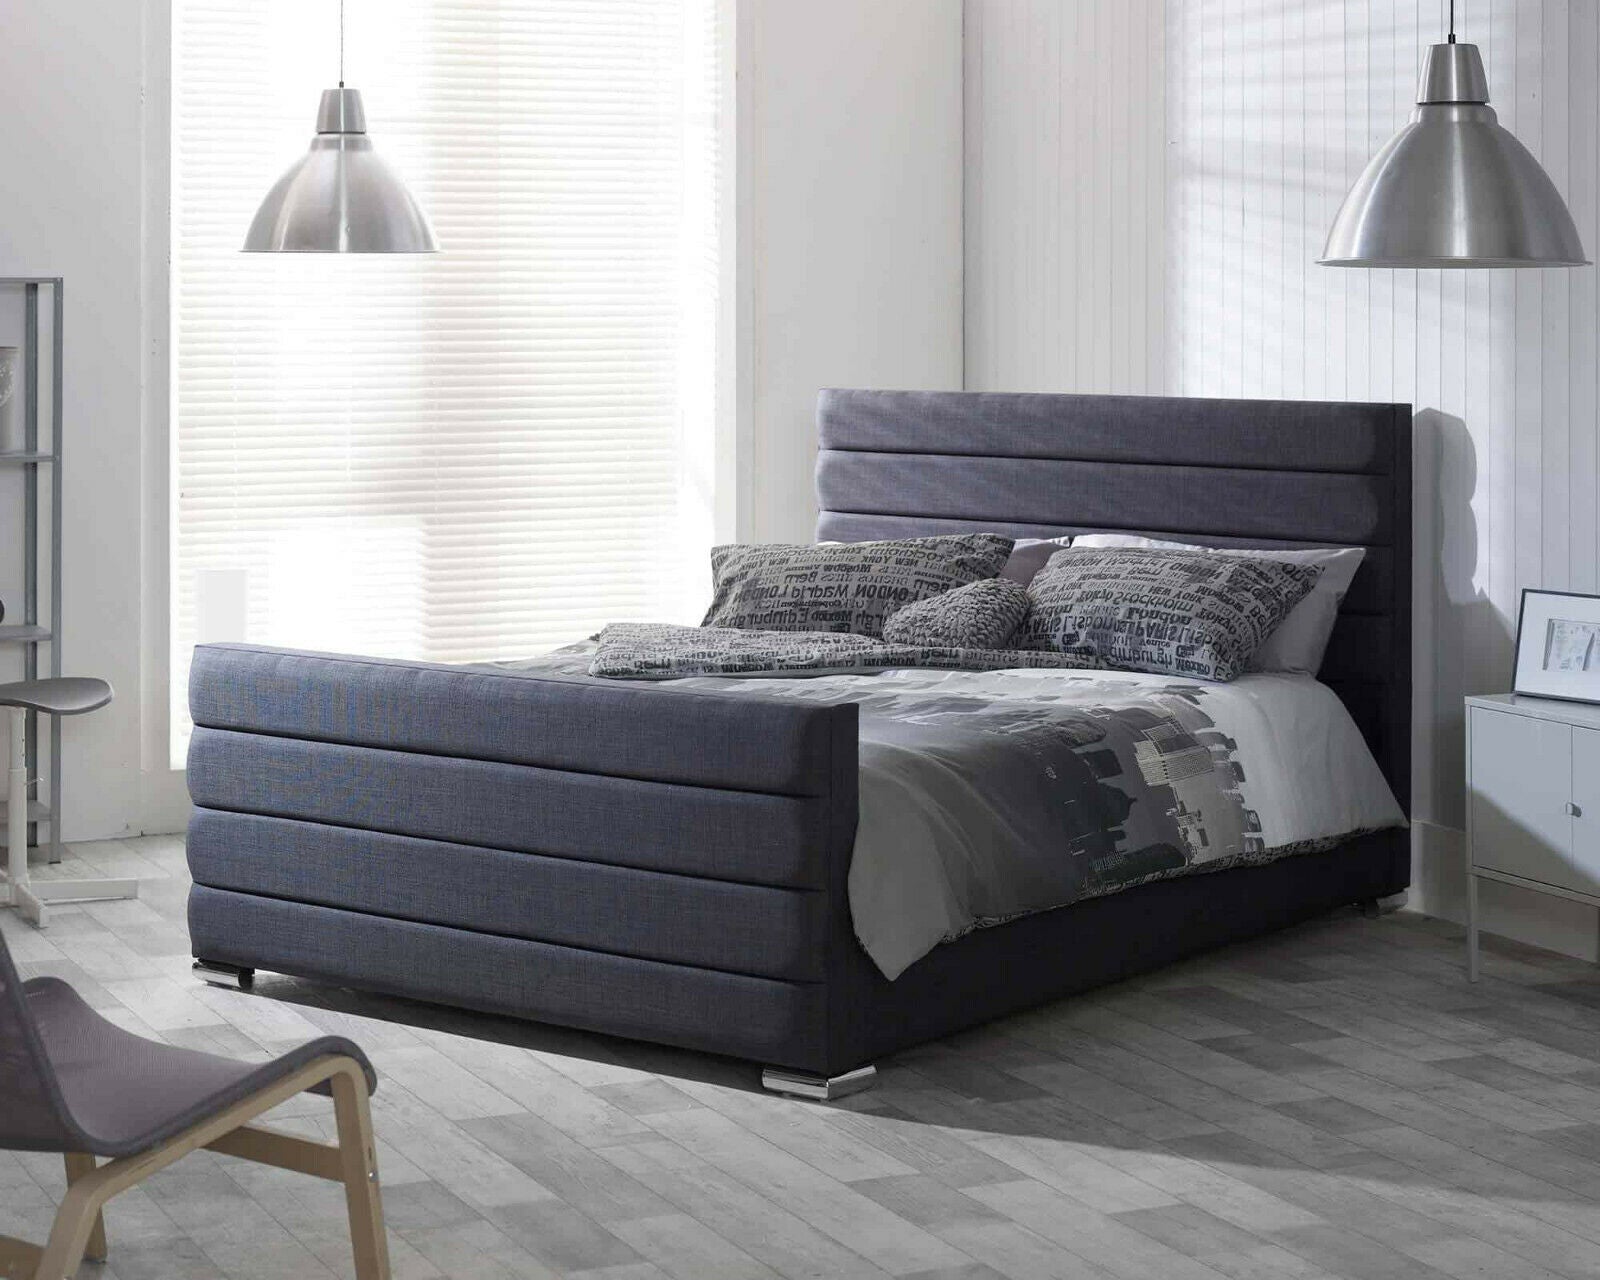 Dallas-Horizontal-Lined-Bed-Frame-Upholstered-Bed-Sleigh-Bed-Modern-Sleigh-Bed-Ottoman-Storage-Bed-Slatted-Bed-Base-Plush-Velvet-Crushed-Velvet-Chenille-Linen